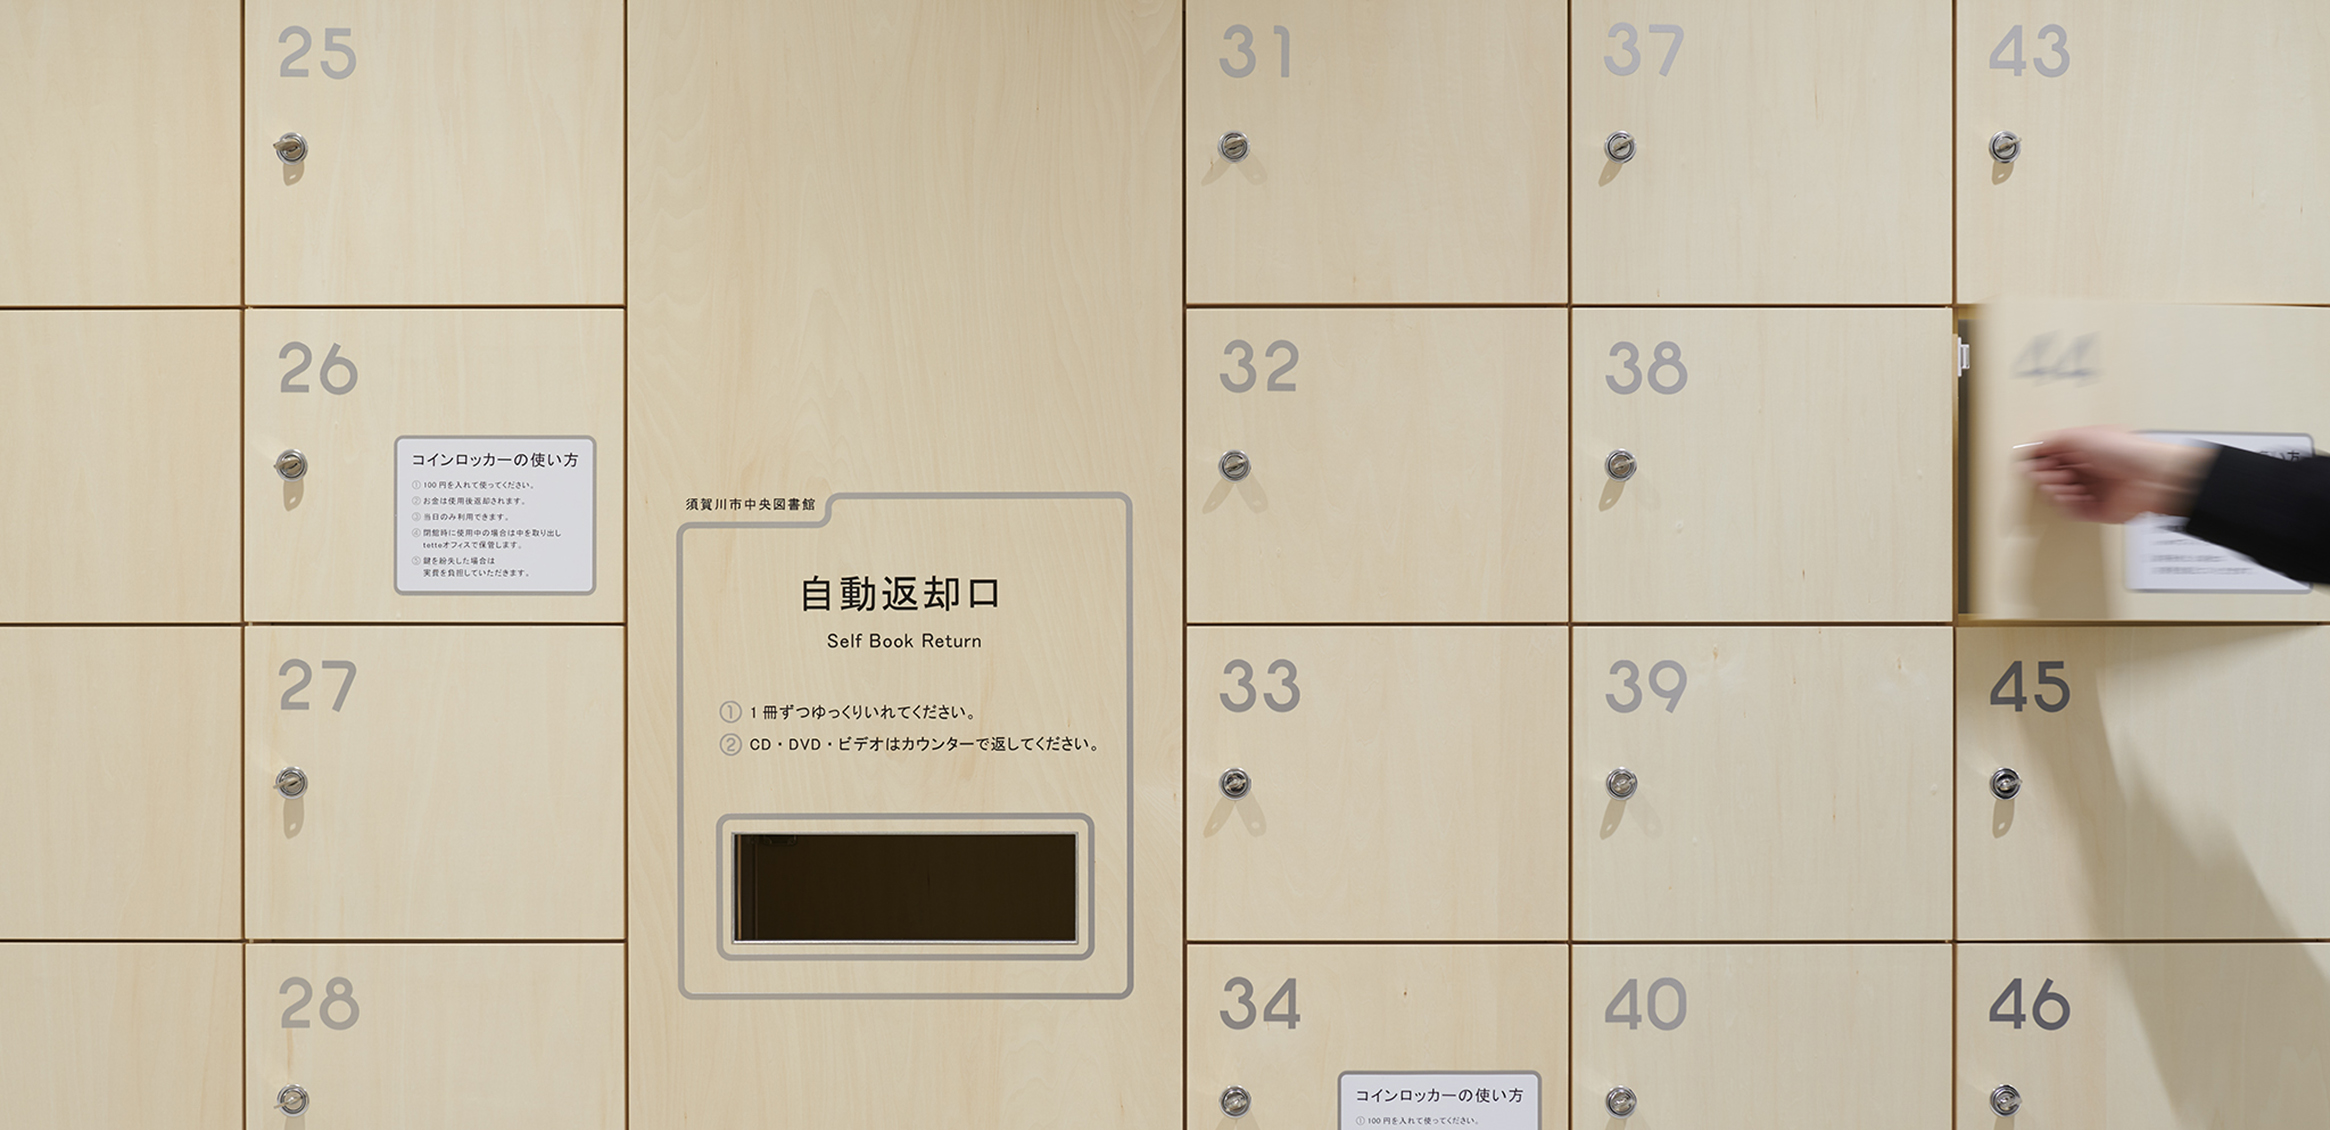 須賀川市民交流センターtette サイン計画,标识设计 © 日本设计中心,ndc,色部デザイン研究室